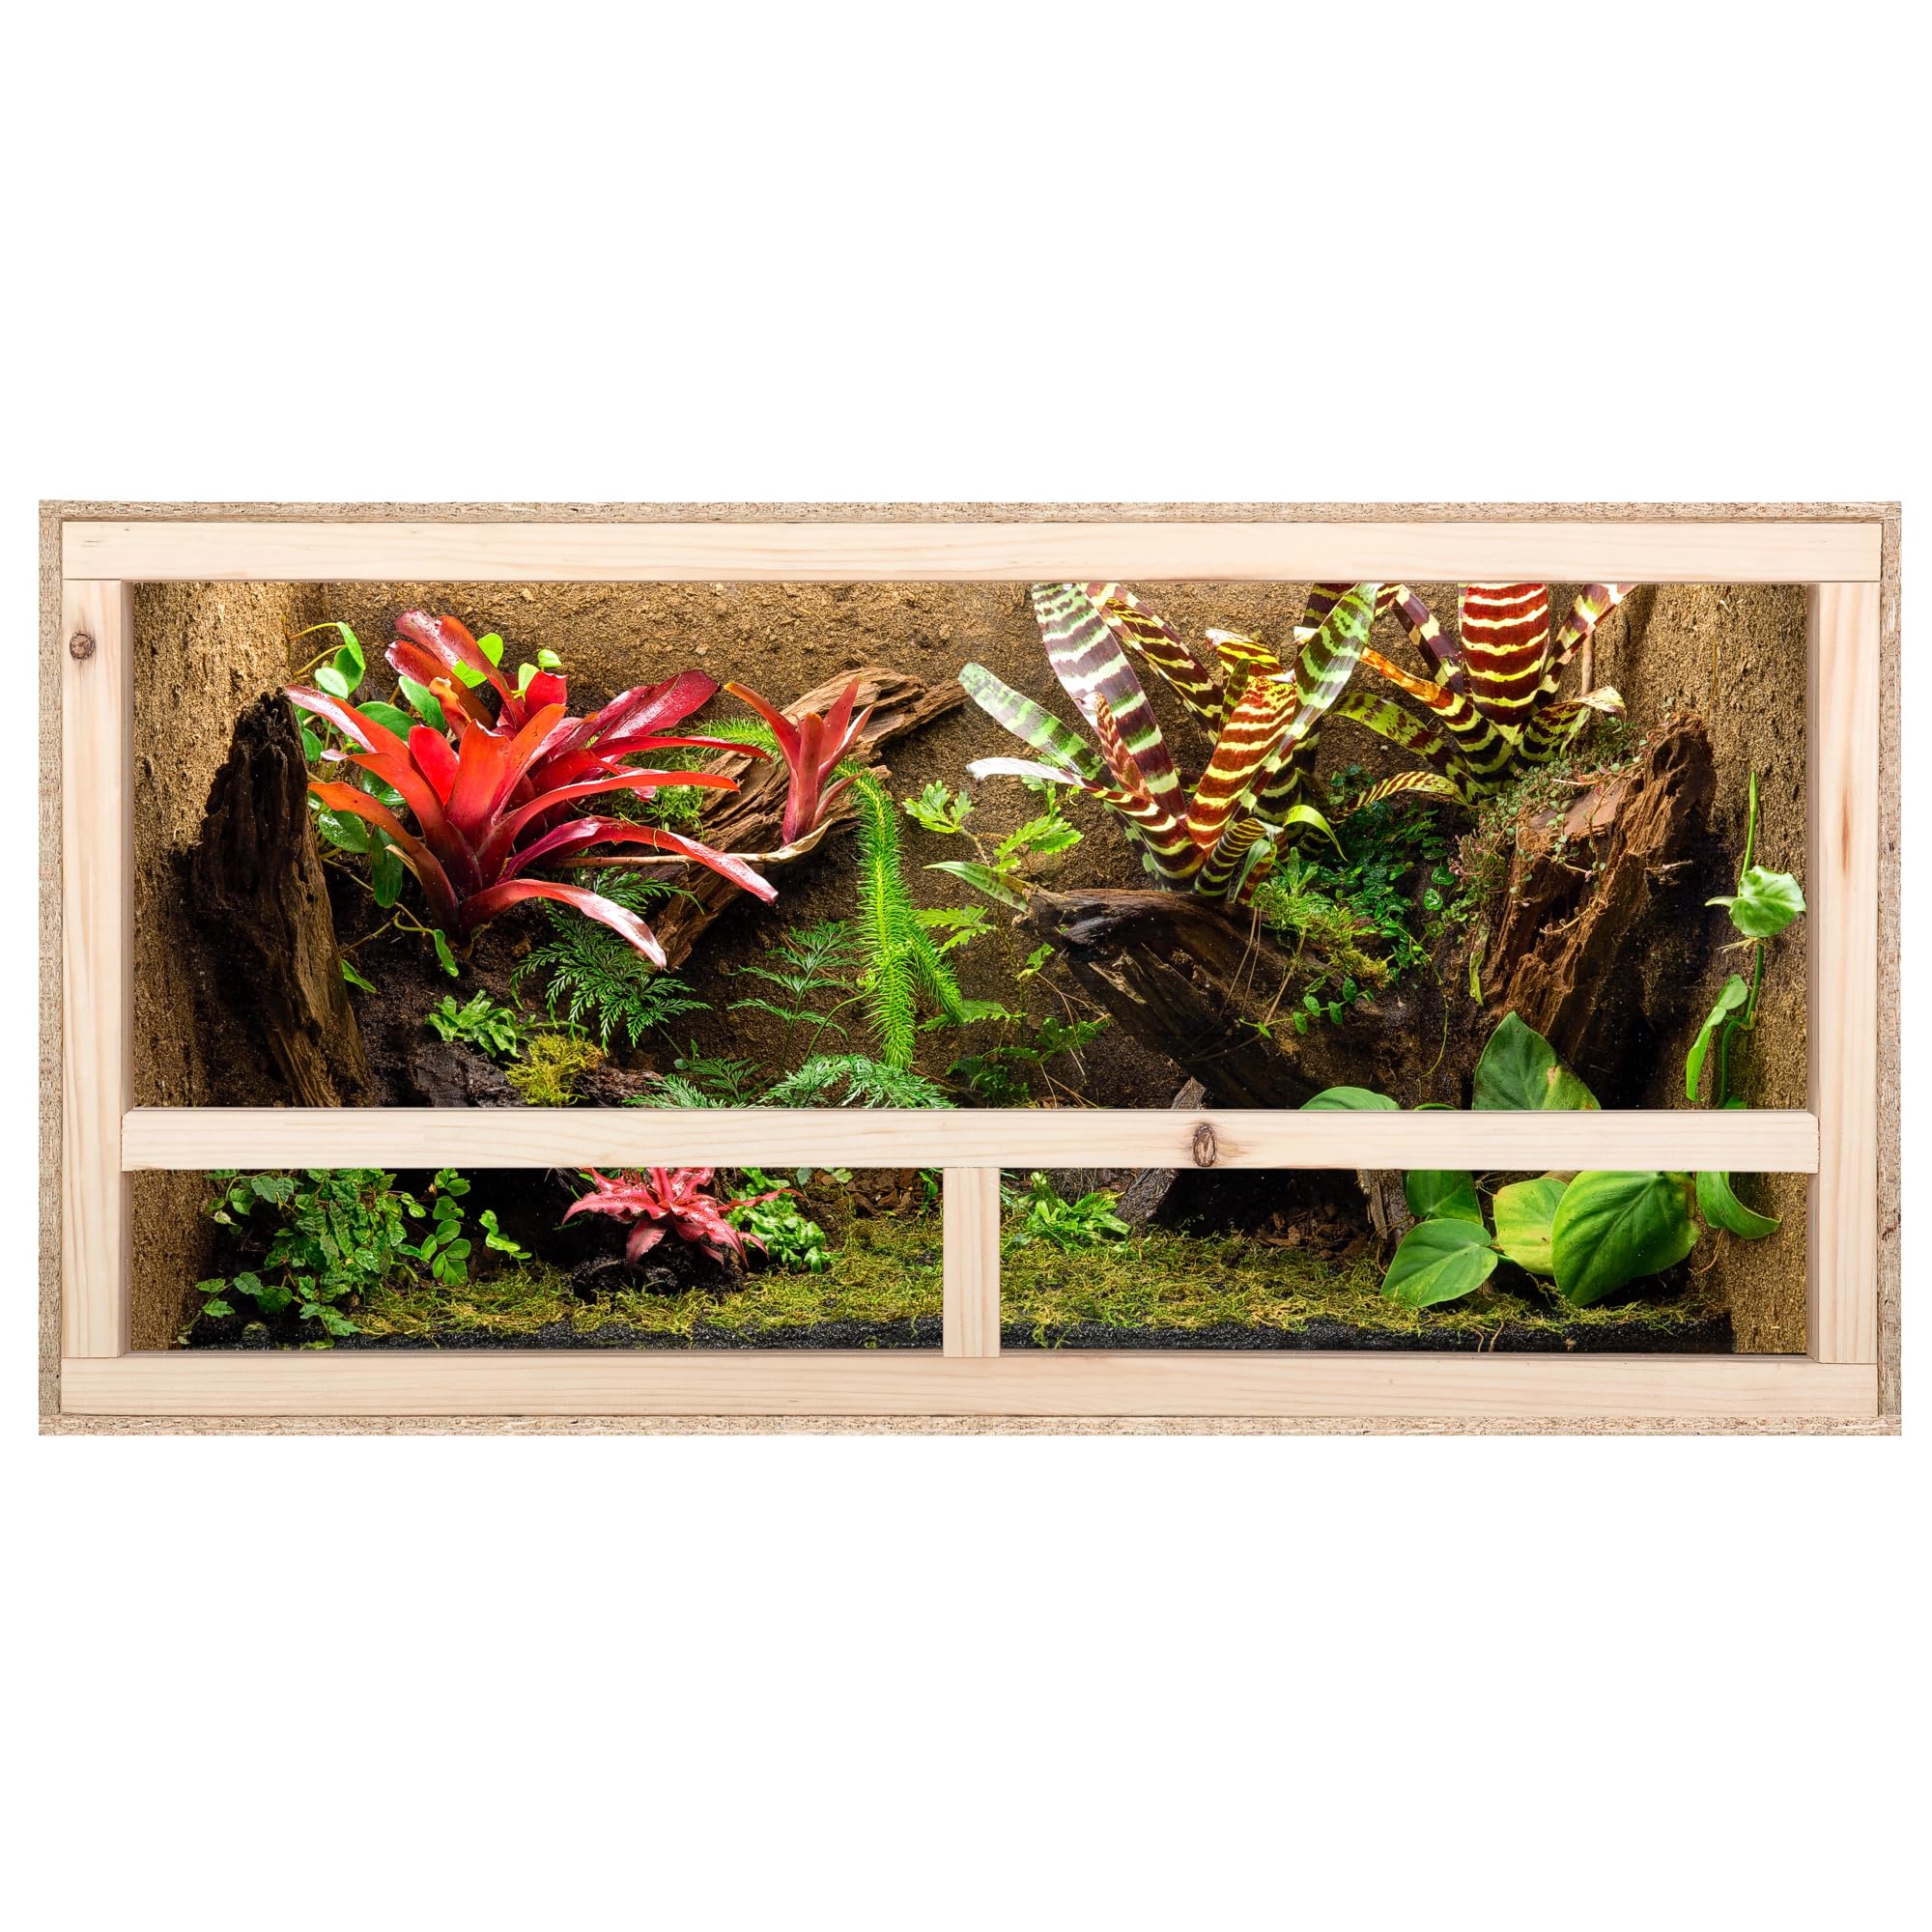 ECOZONE Holz Terrarium mit Seitenbelüftung 100x50x40 cm (LxBxH) - Holzterrarium aus OSB Platten - Terrarien für exotische Tiere wie Schlangen, Reptilien & Amphibien